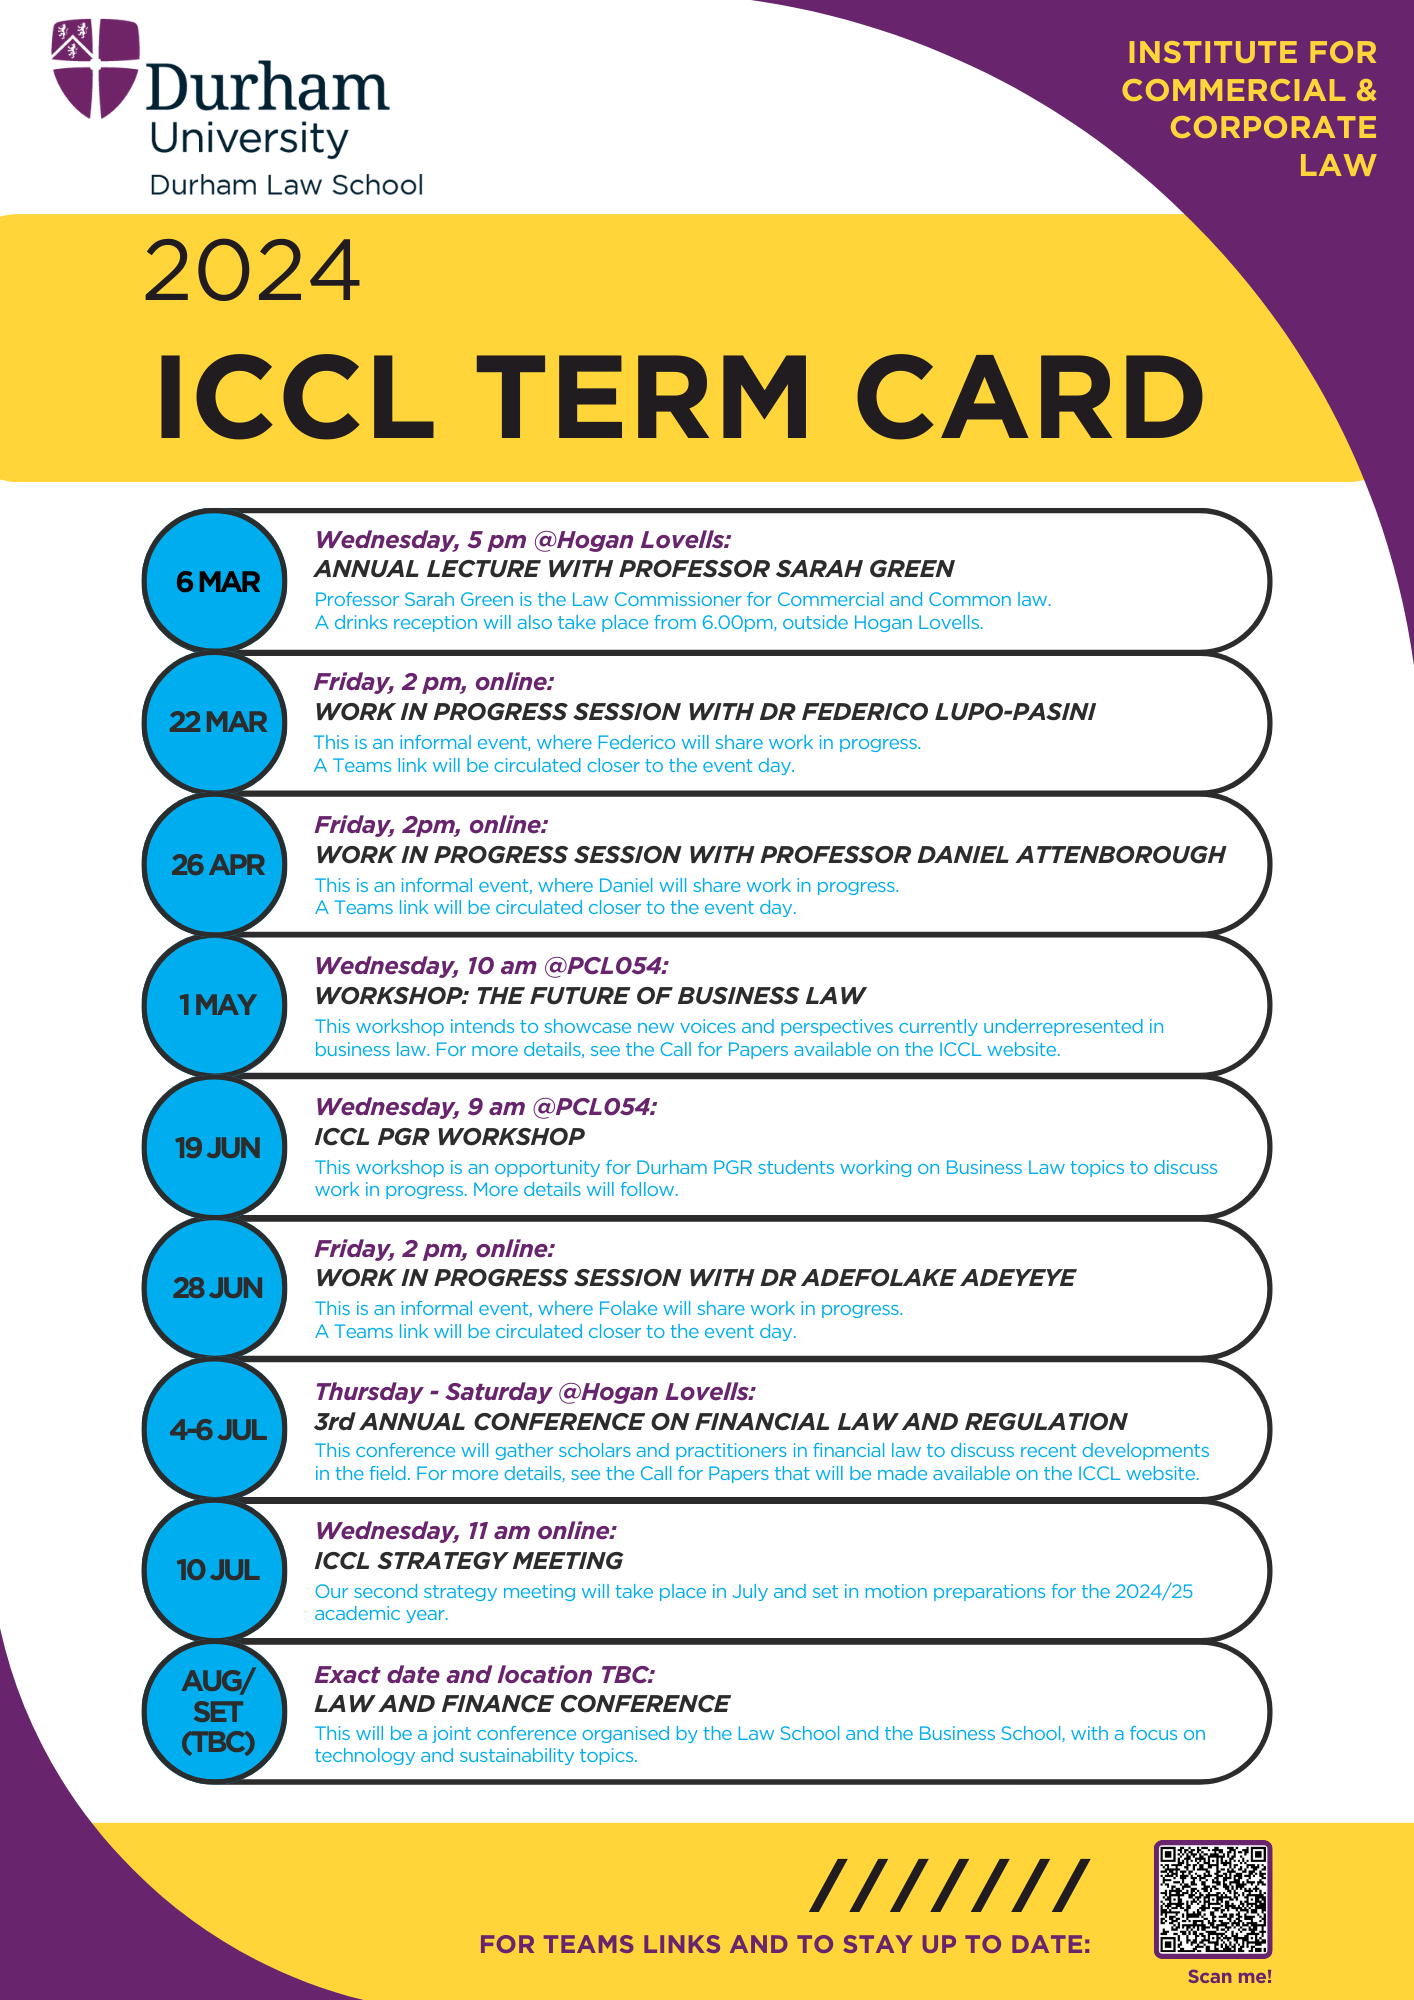 ICCL Term Card 2024